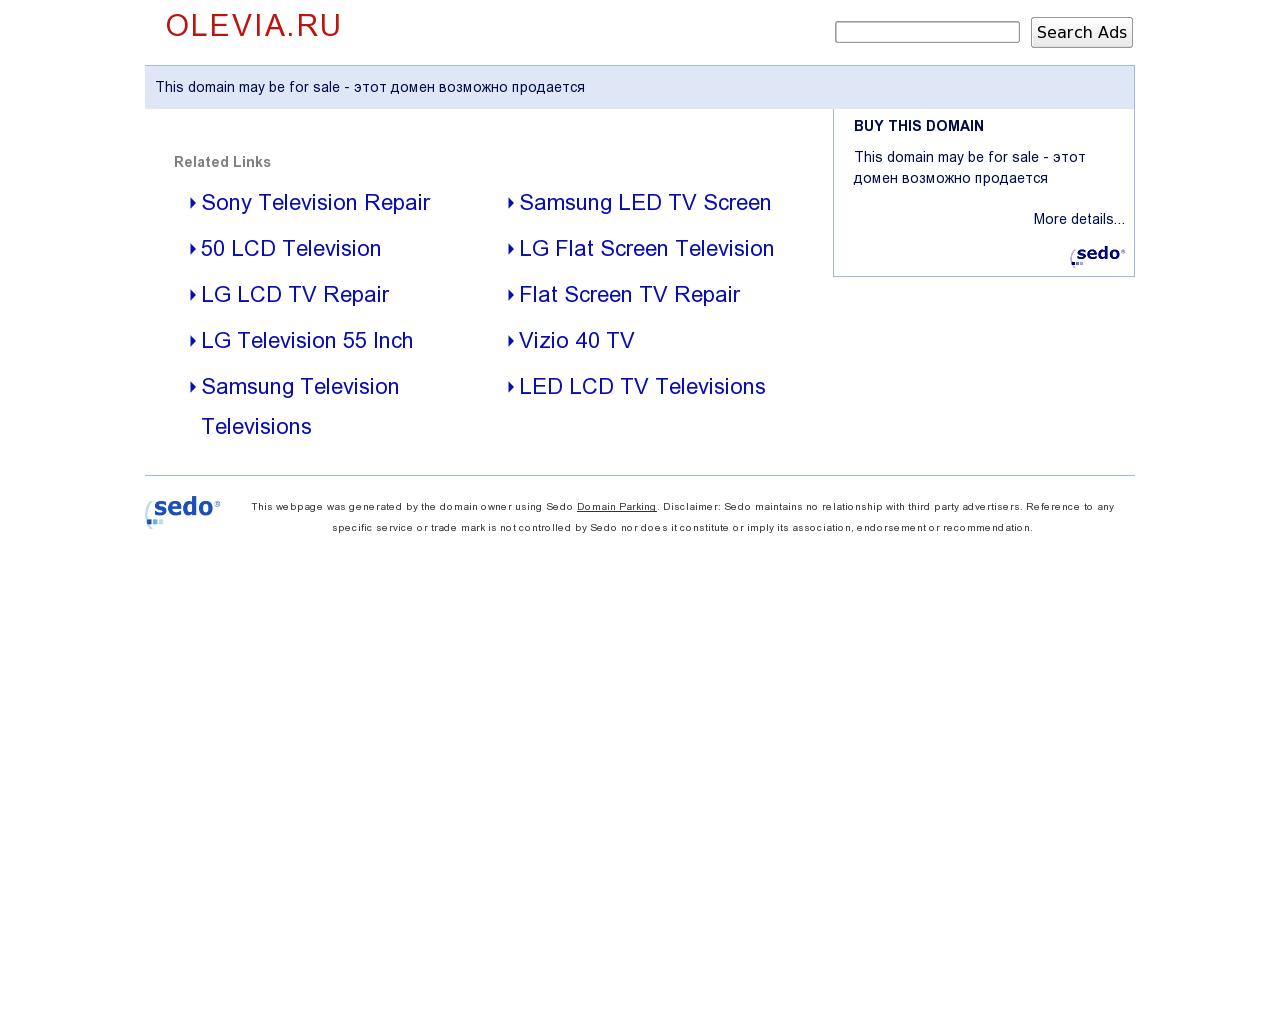 Изображение сайта olevia.ru в разрешении 1280x1024